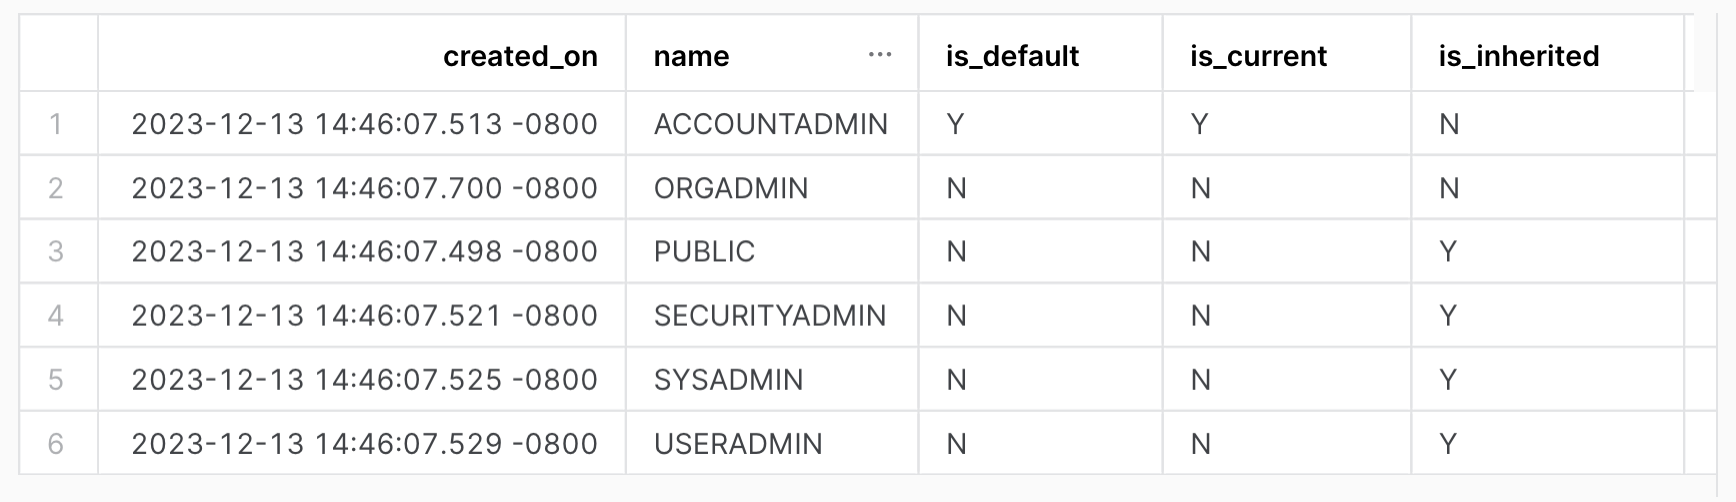 Affichez tous les rôles du compte. Sortie de la table avec les colonnes suivantes : created_on, name, is_default, is_current, is_inherited.